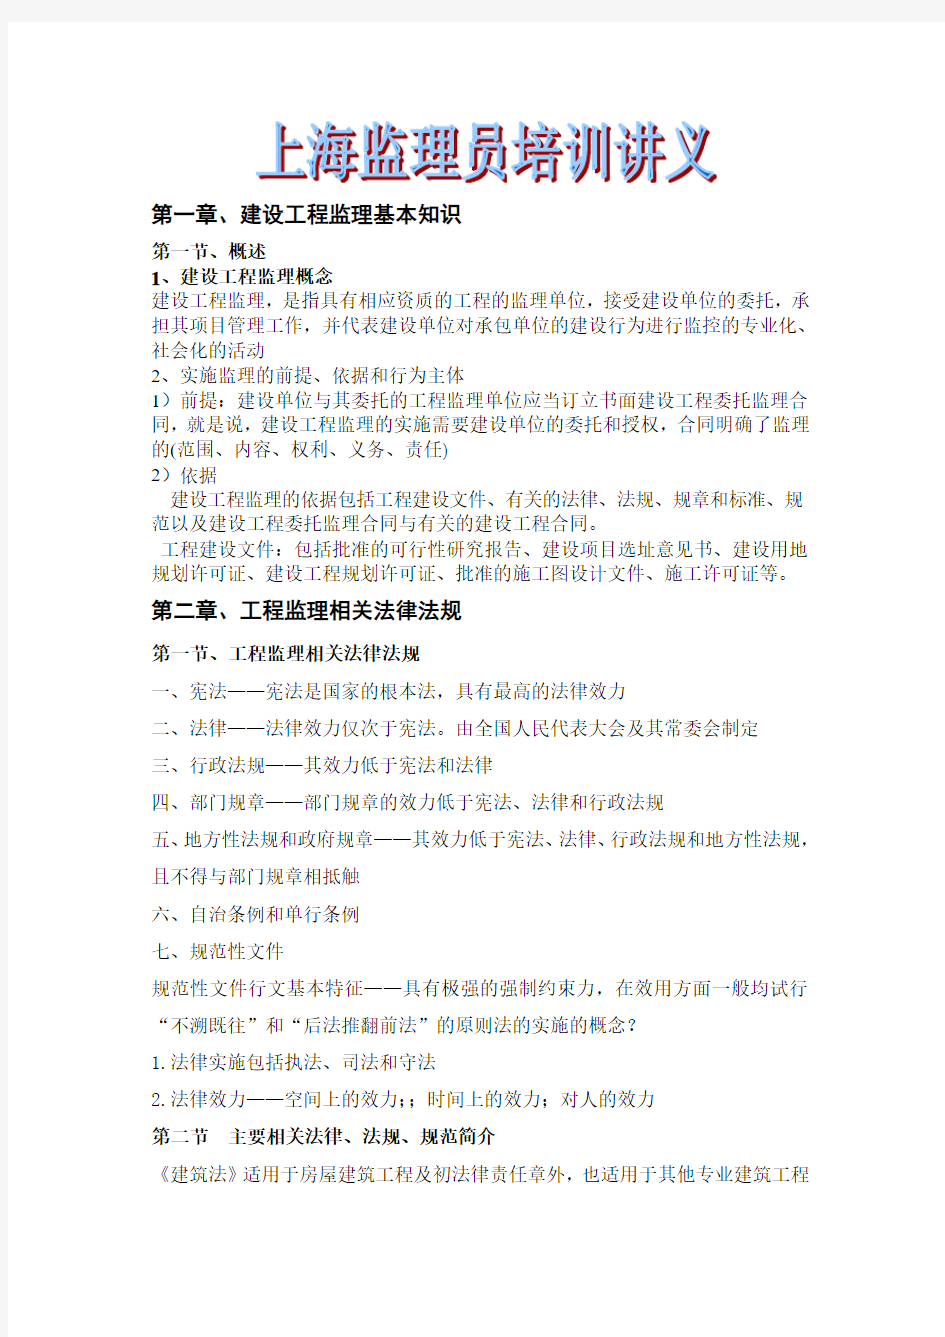 上海监理员考试提纲(上册)